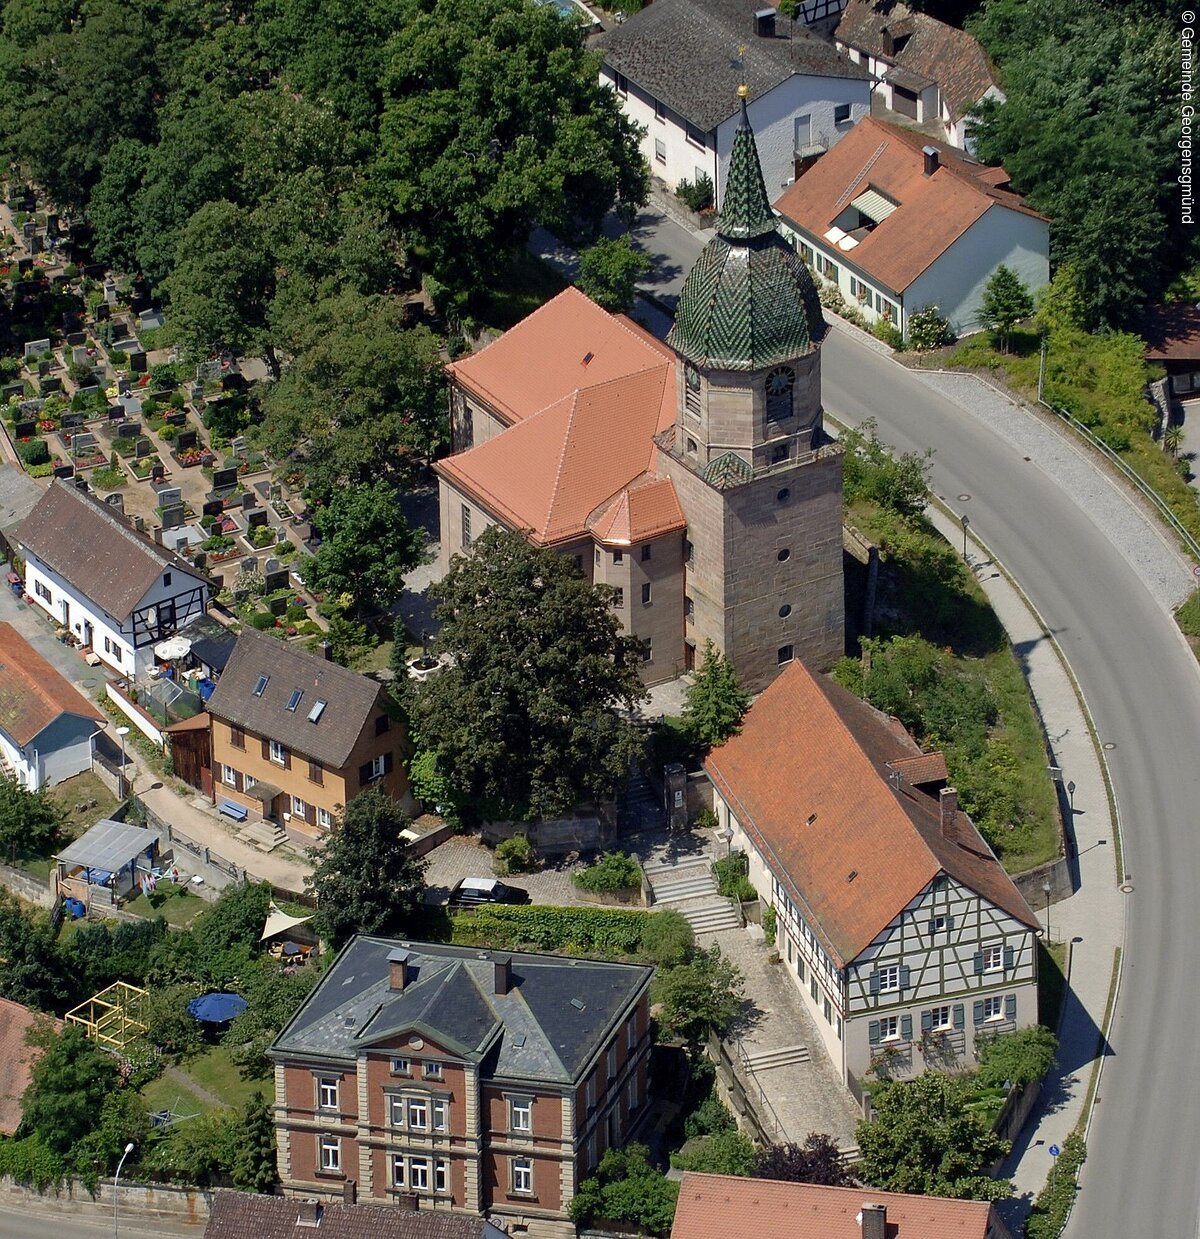 Luftbild eines Dorfes